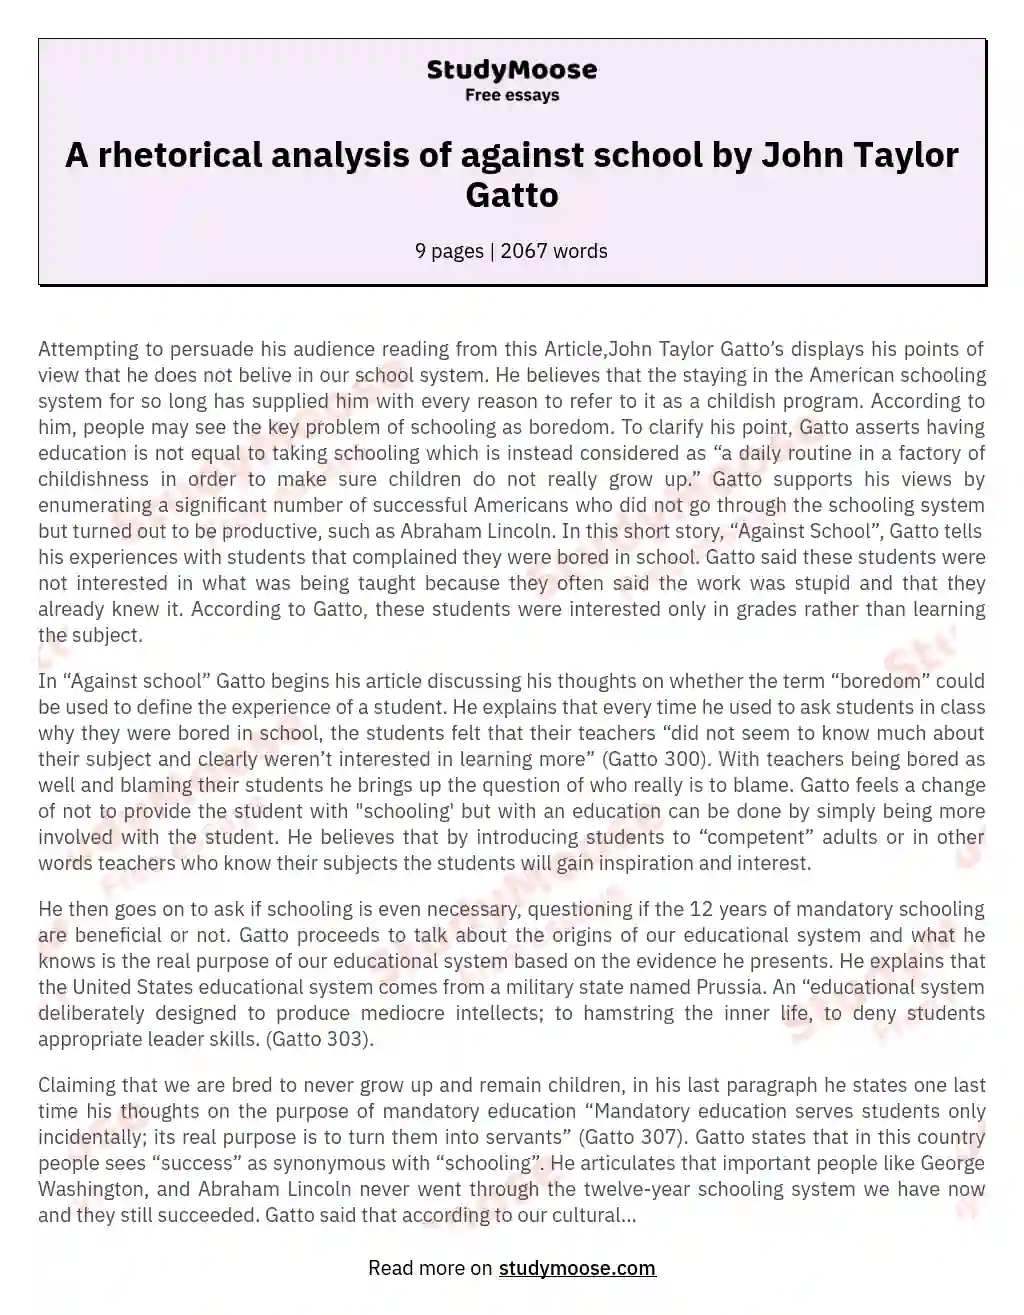 A rhetorical analysis of against school by John Taylor Gatto essay